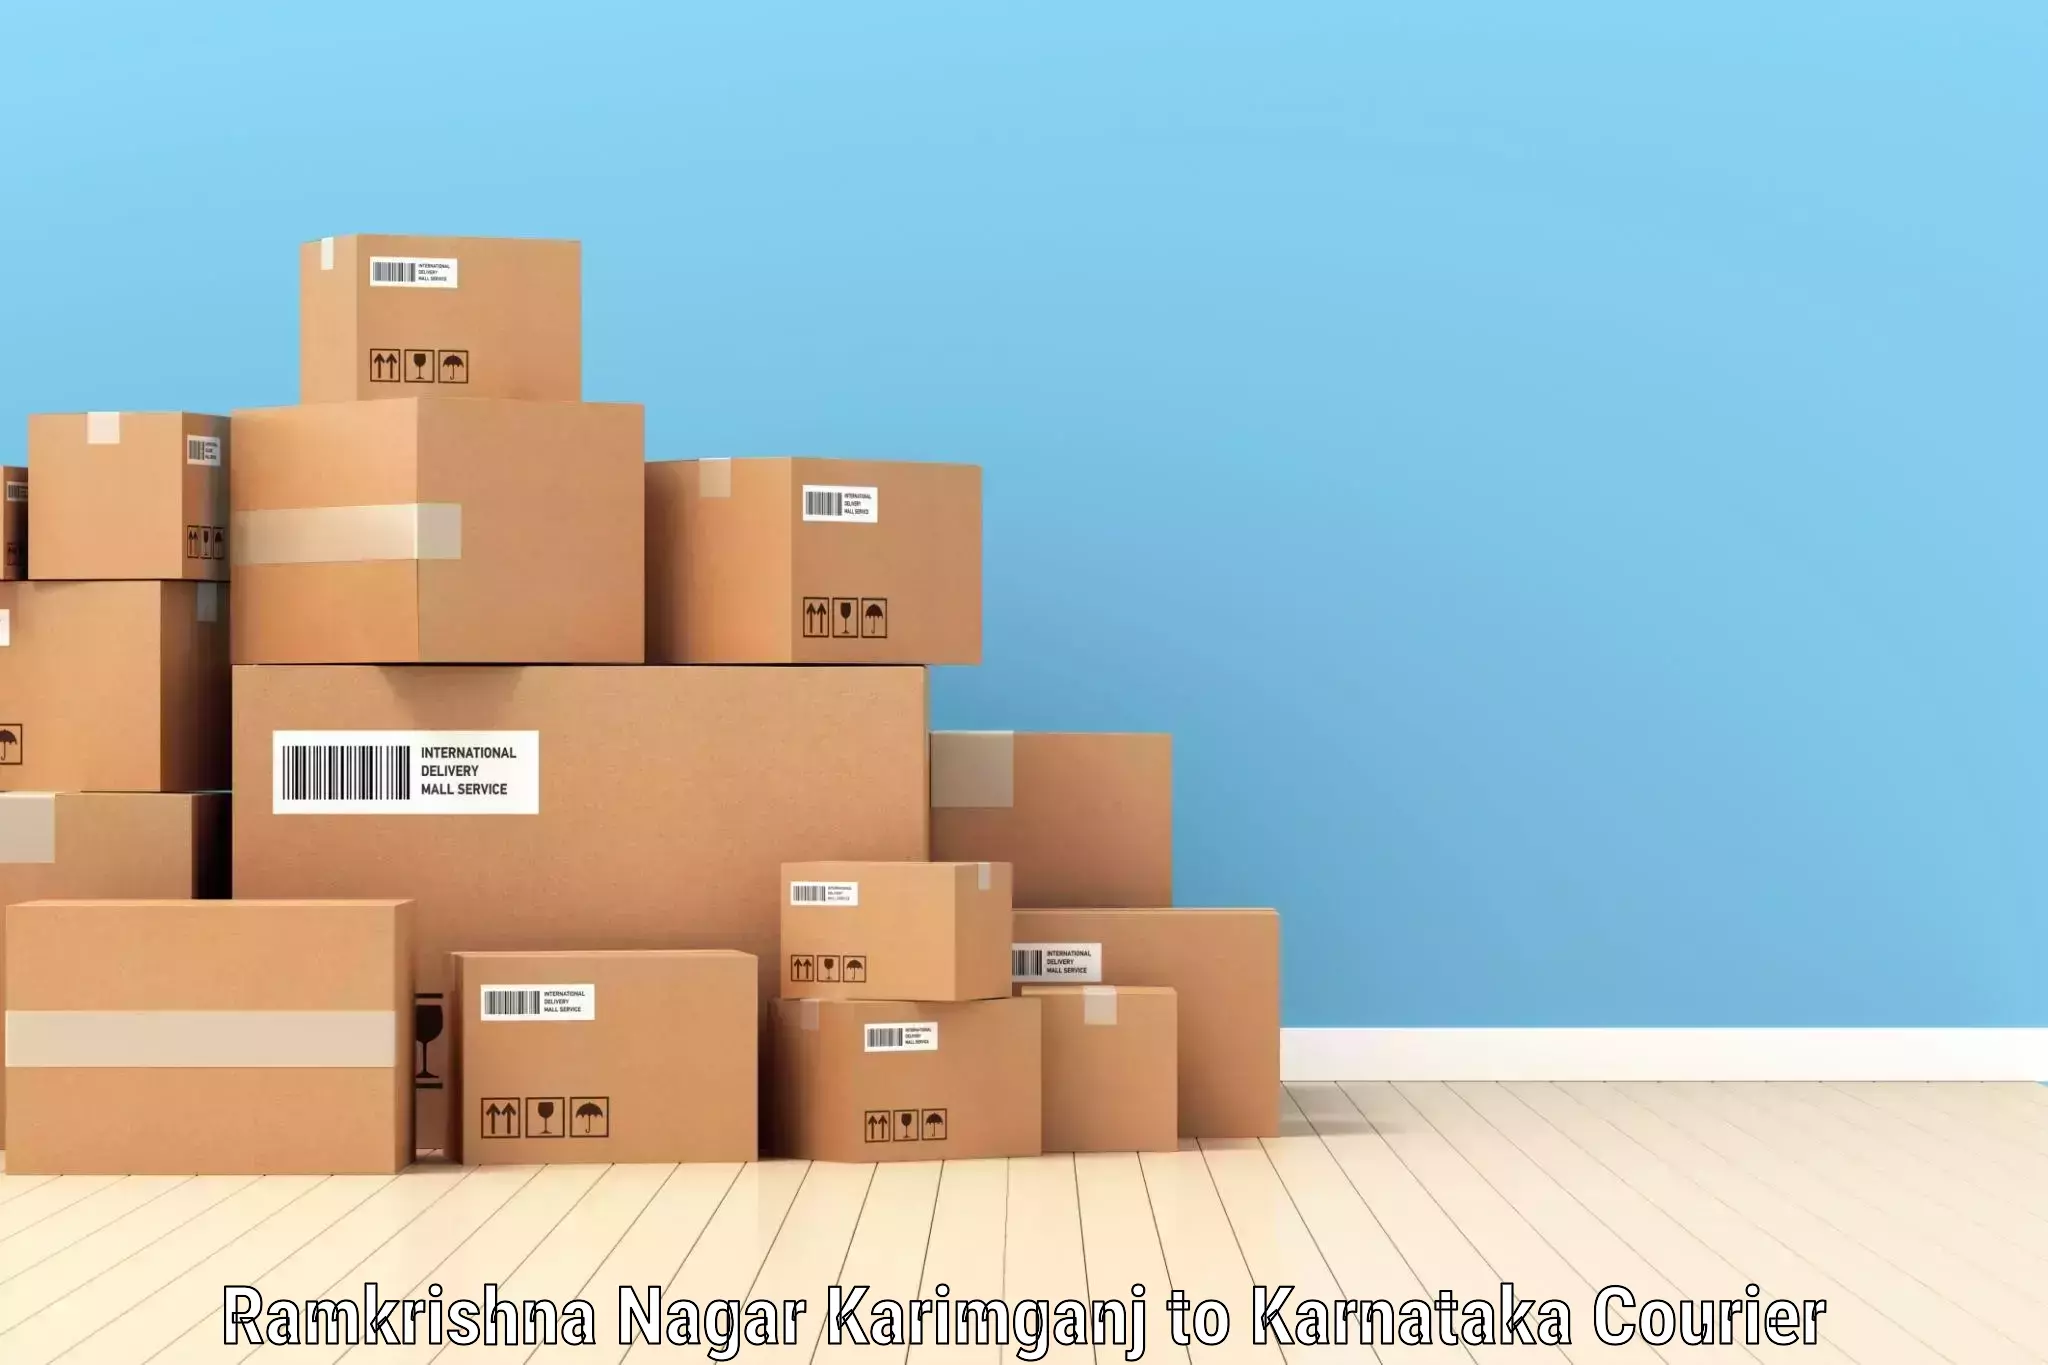 High-capacity courier solutions Ramkrishna Nagar Karimganj to Humnabad